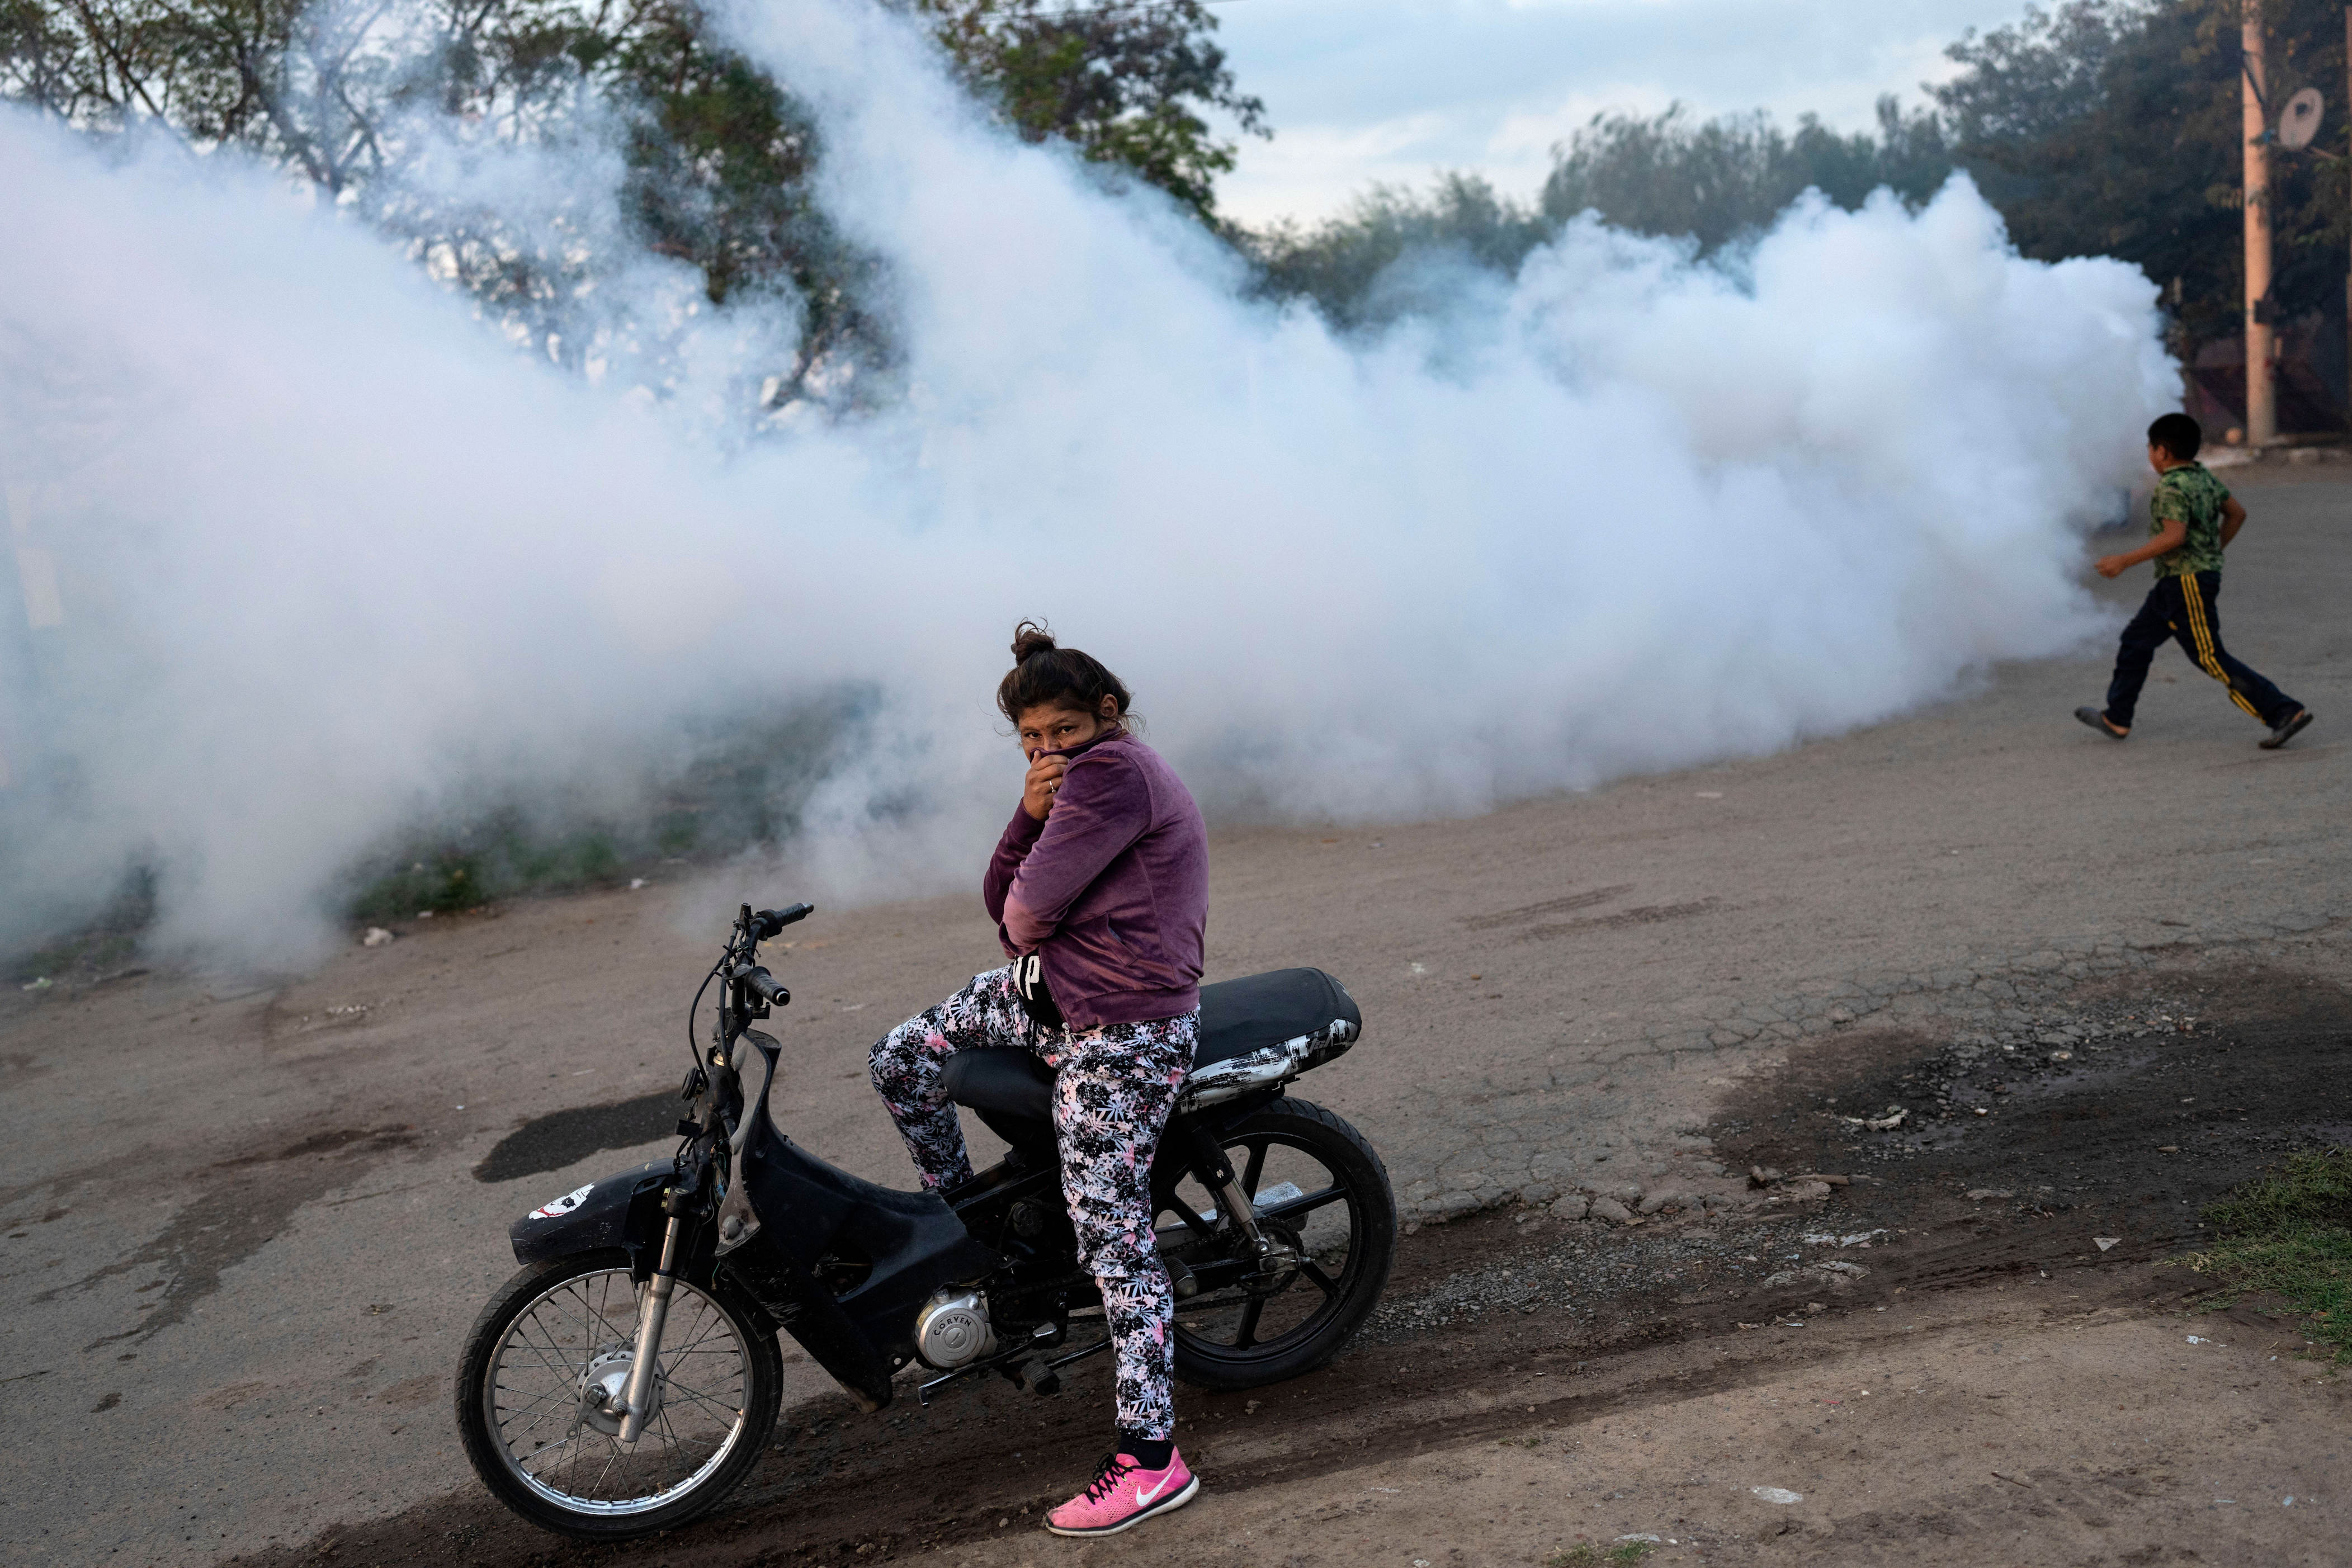 der klimawandel fördert die ausbreitung der dengue-krankheit. ein augenschein vor ort in argentinien